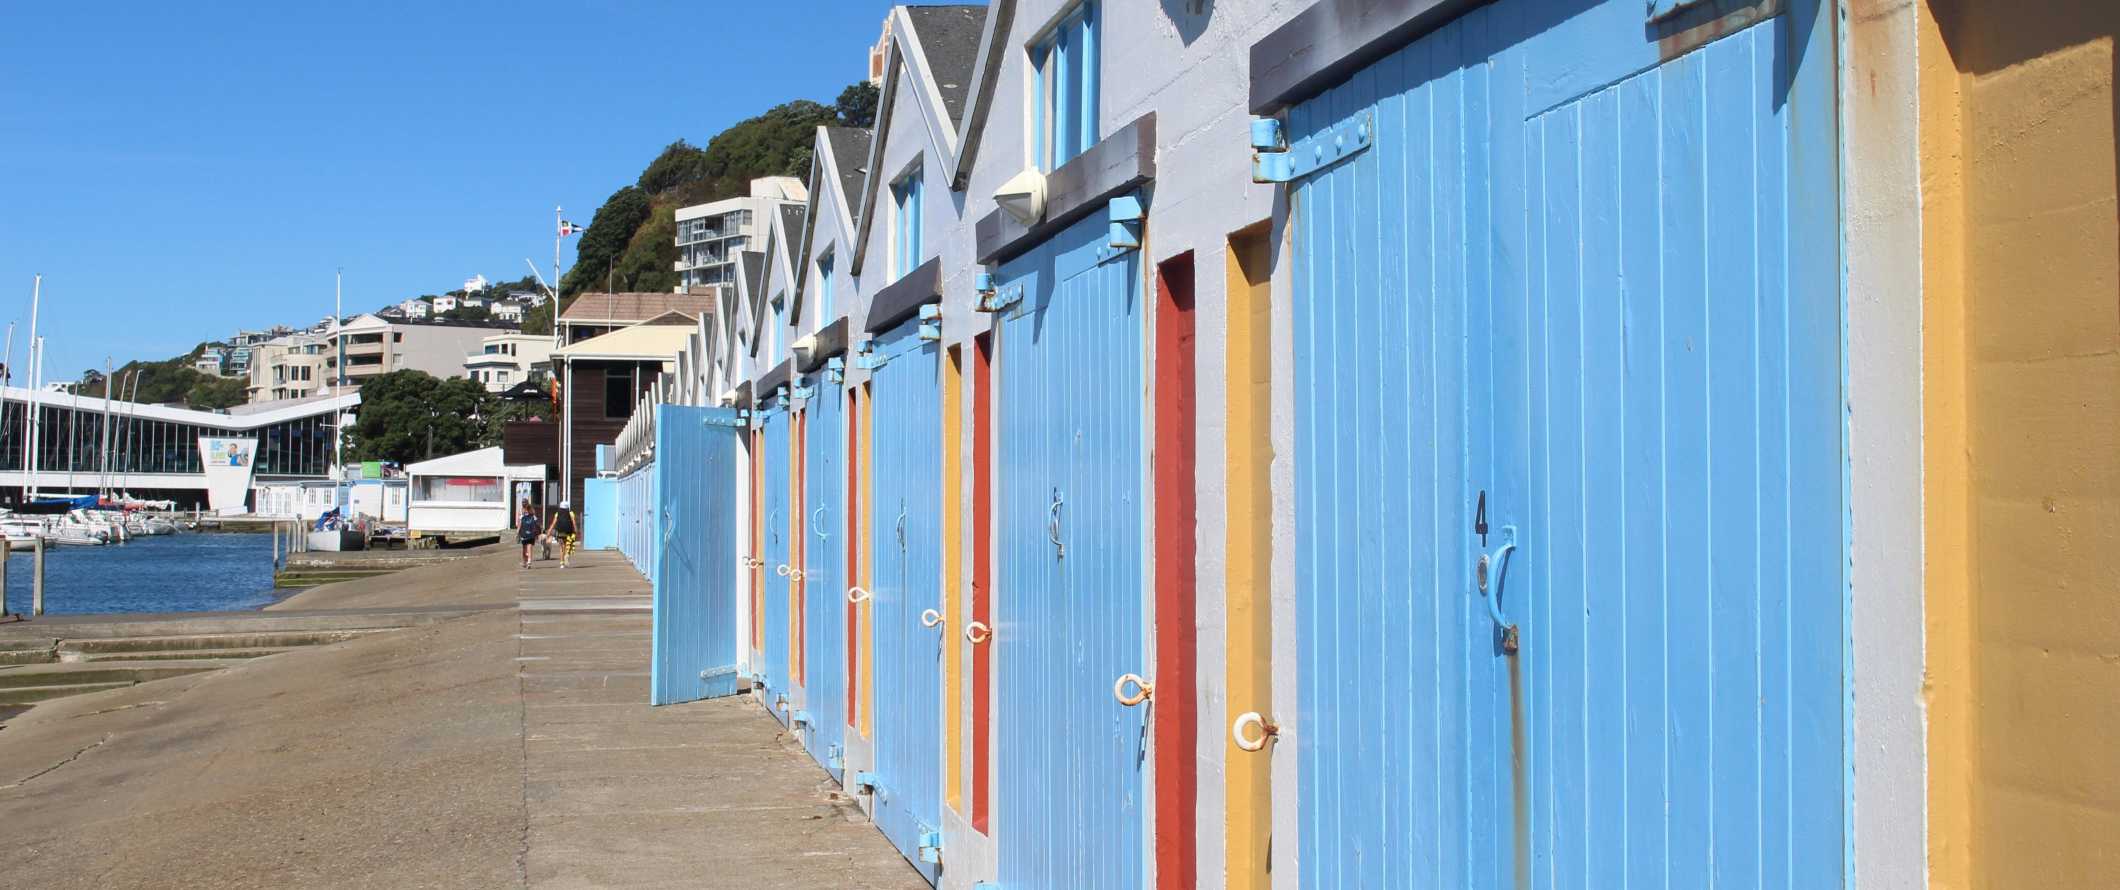 Barcos pintados em cores vivas e armazéns alinham-se à beira-mar do porto em Wellington, Nova Zelândia.